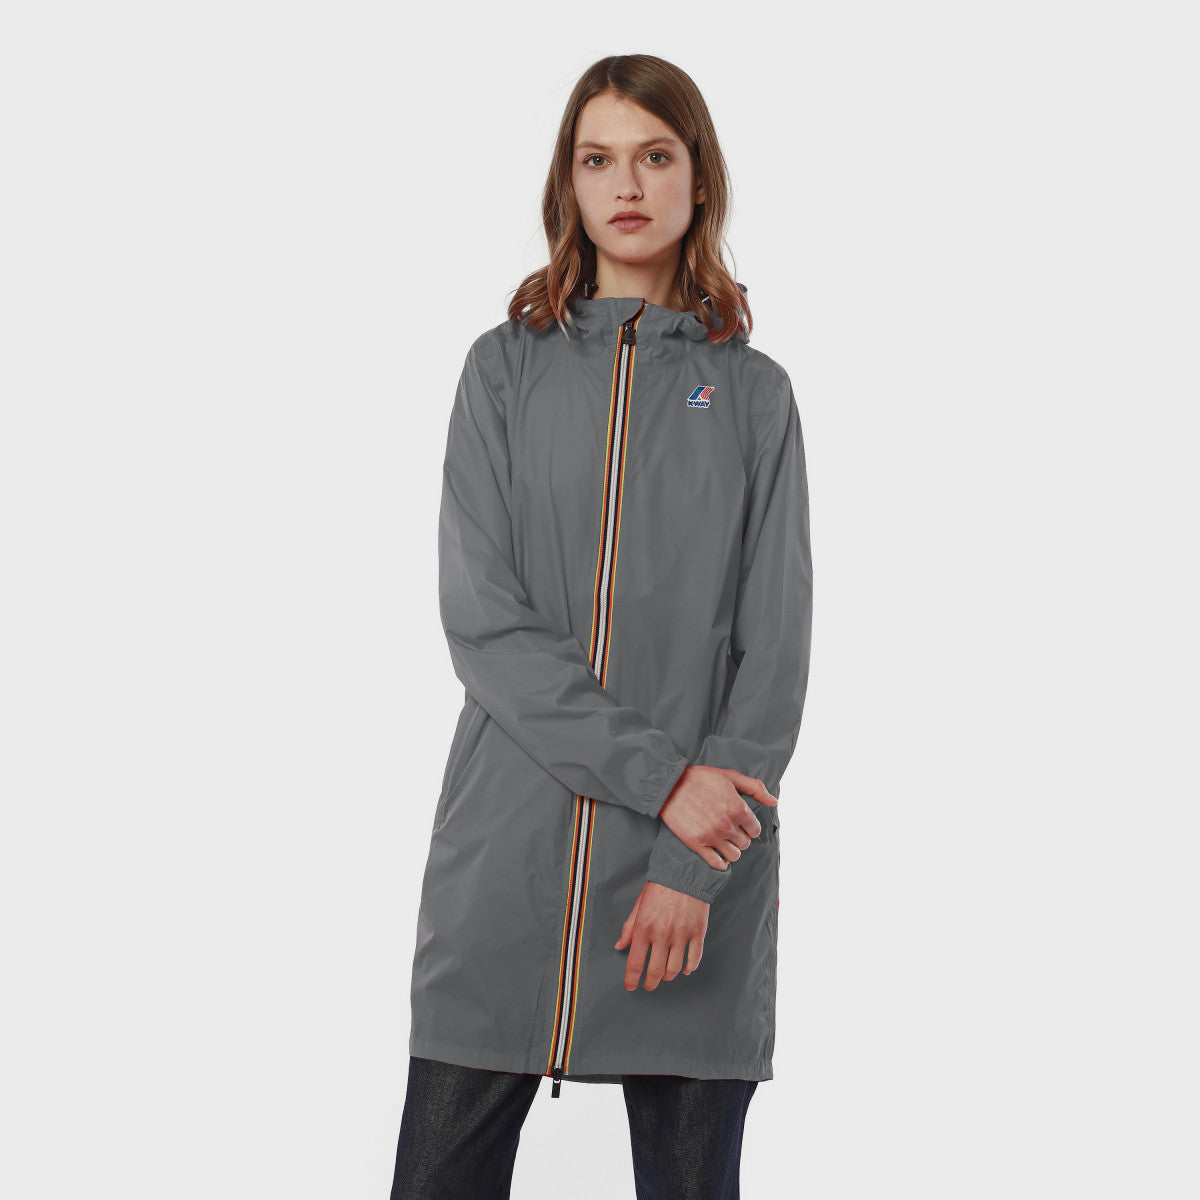 Eiffel - Unisex Waterproof Packable Long Rain Jacket in Grey Smoke